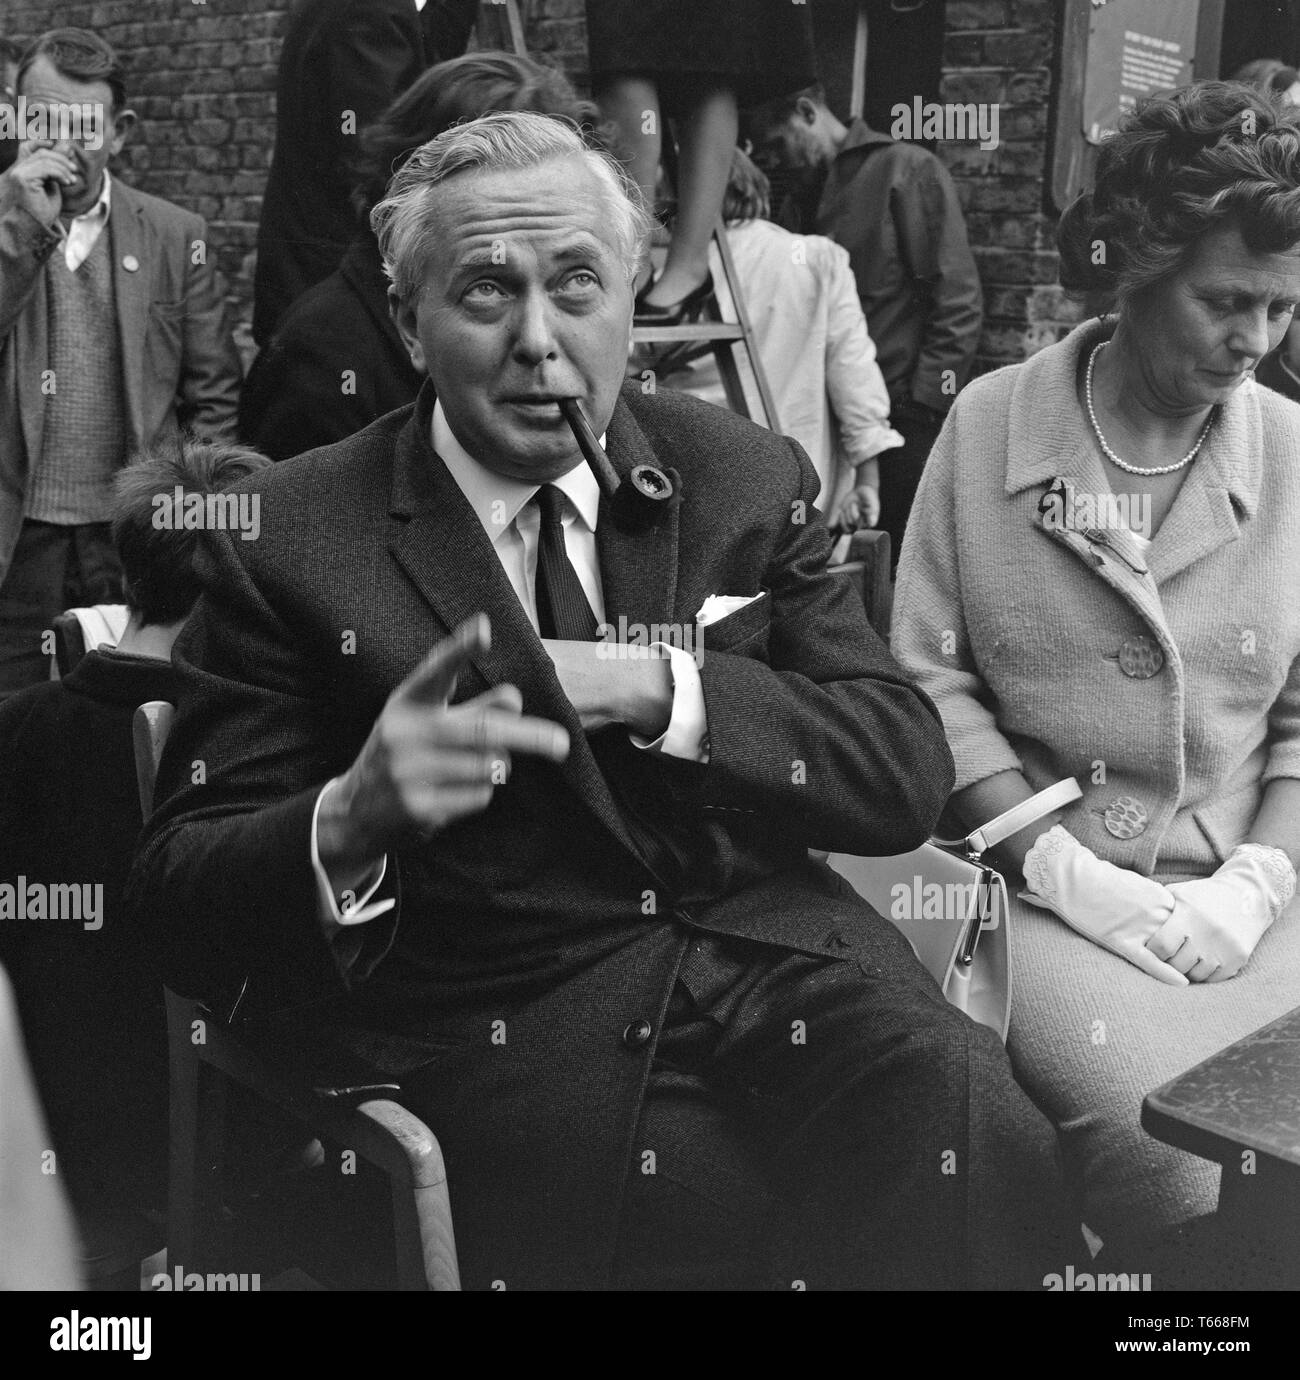 Homme politique et, finalement, le premier ministre Harold Wilson, faisait campagne dans Lewisham, dans le sud de Londres, au cours de l'élection générale britannique de 1964. Son épouse, Mary, assise à côté de lui. Banque D'Images